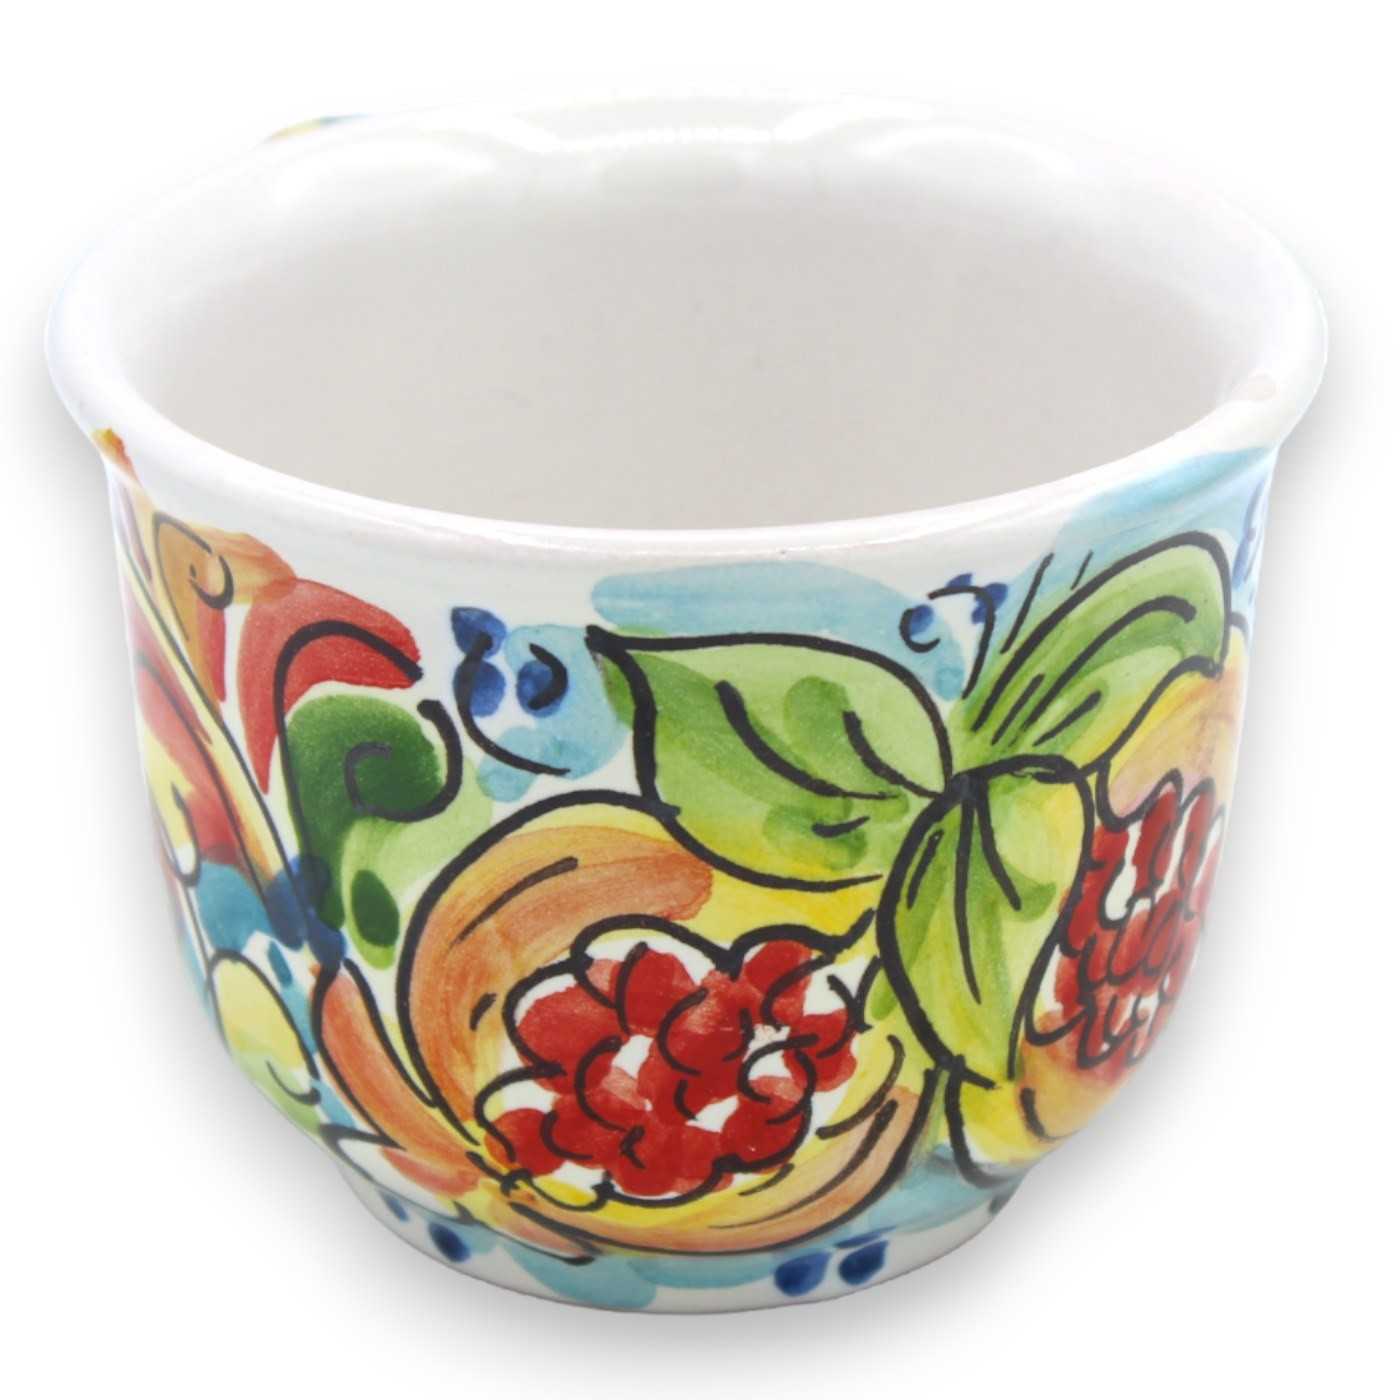 Tazza da latte con manico, in ceramica Caltagirone, L 10 cm ca. (1pz)  decoro frutta e barocco multicolore casuale